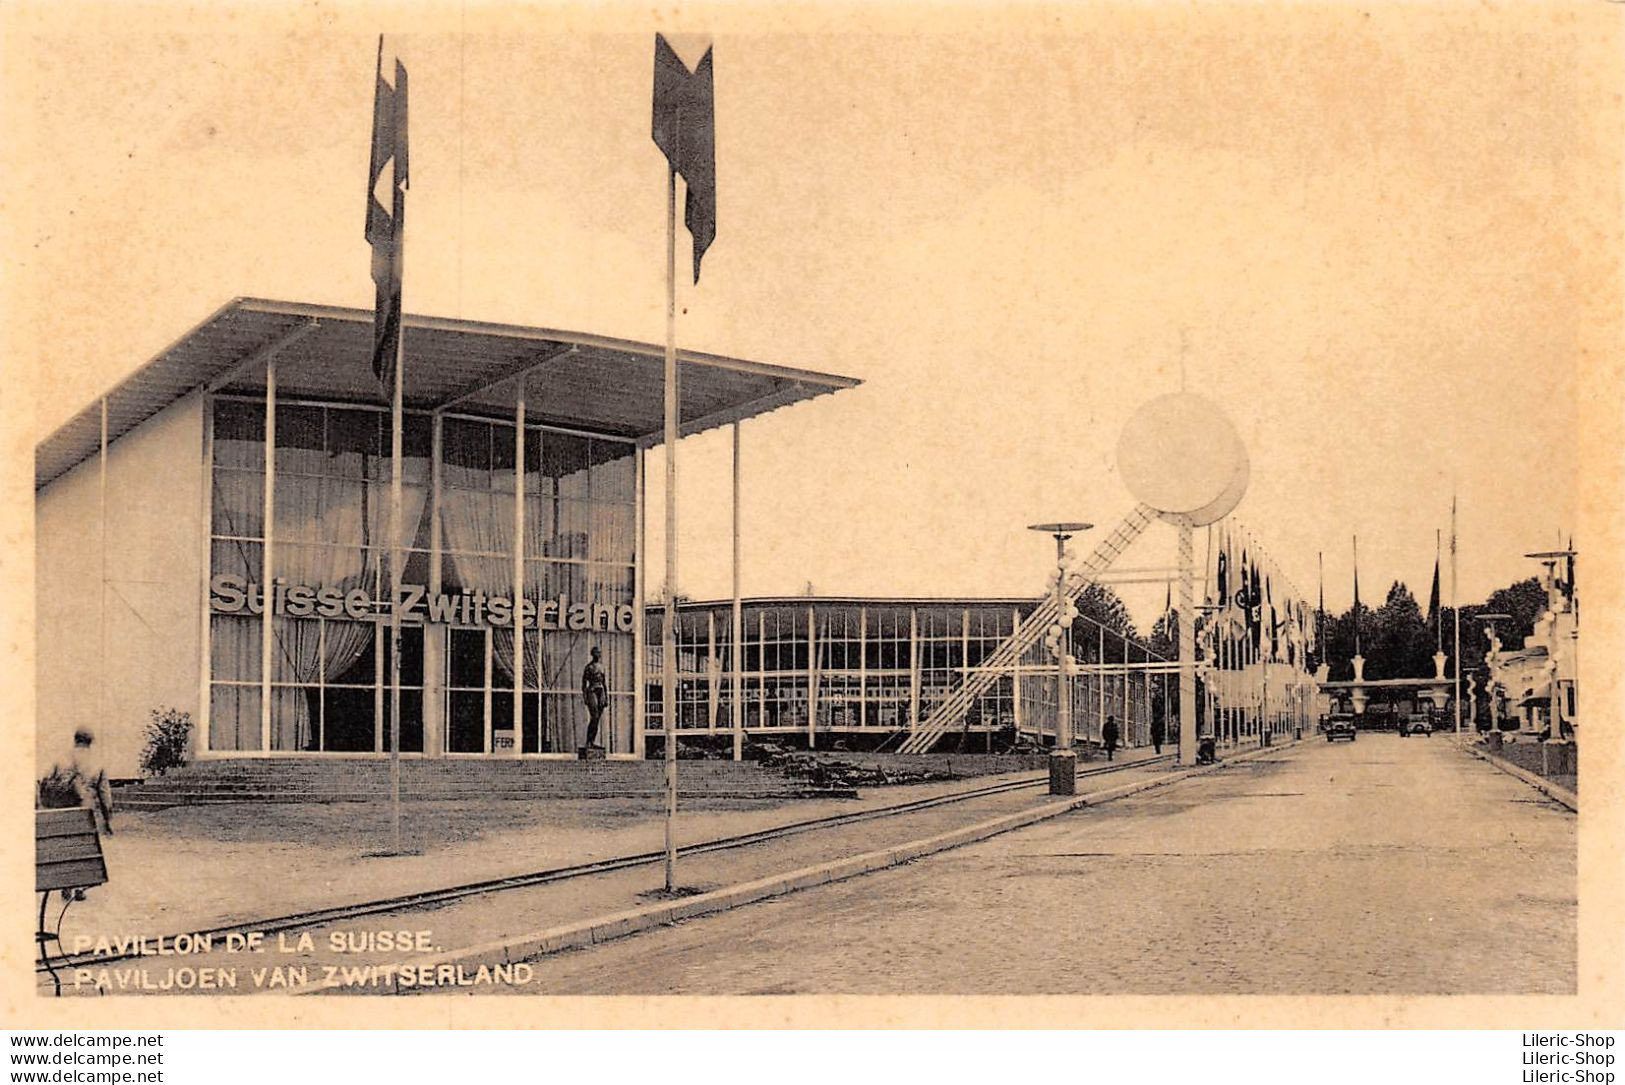 Exposition Universelle 1935 - PAVILLON DE LA SUISSE.  PAVILJOEN VAN ZWITSERLAND - Expositions Universelles